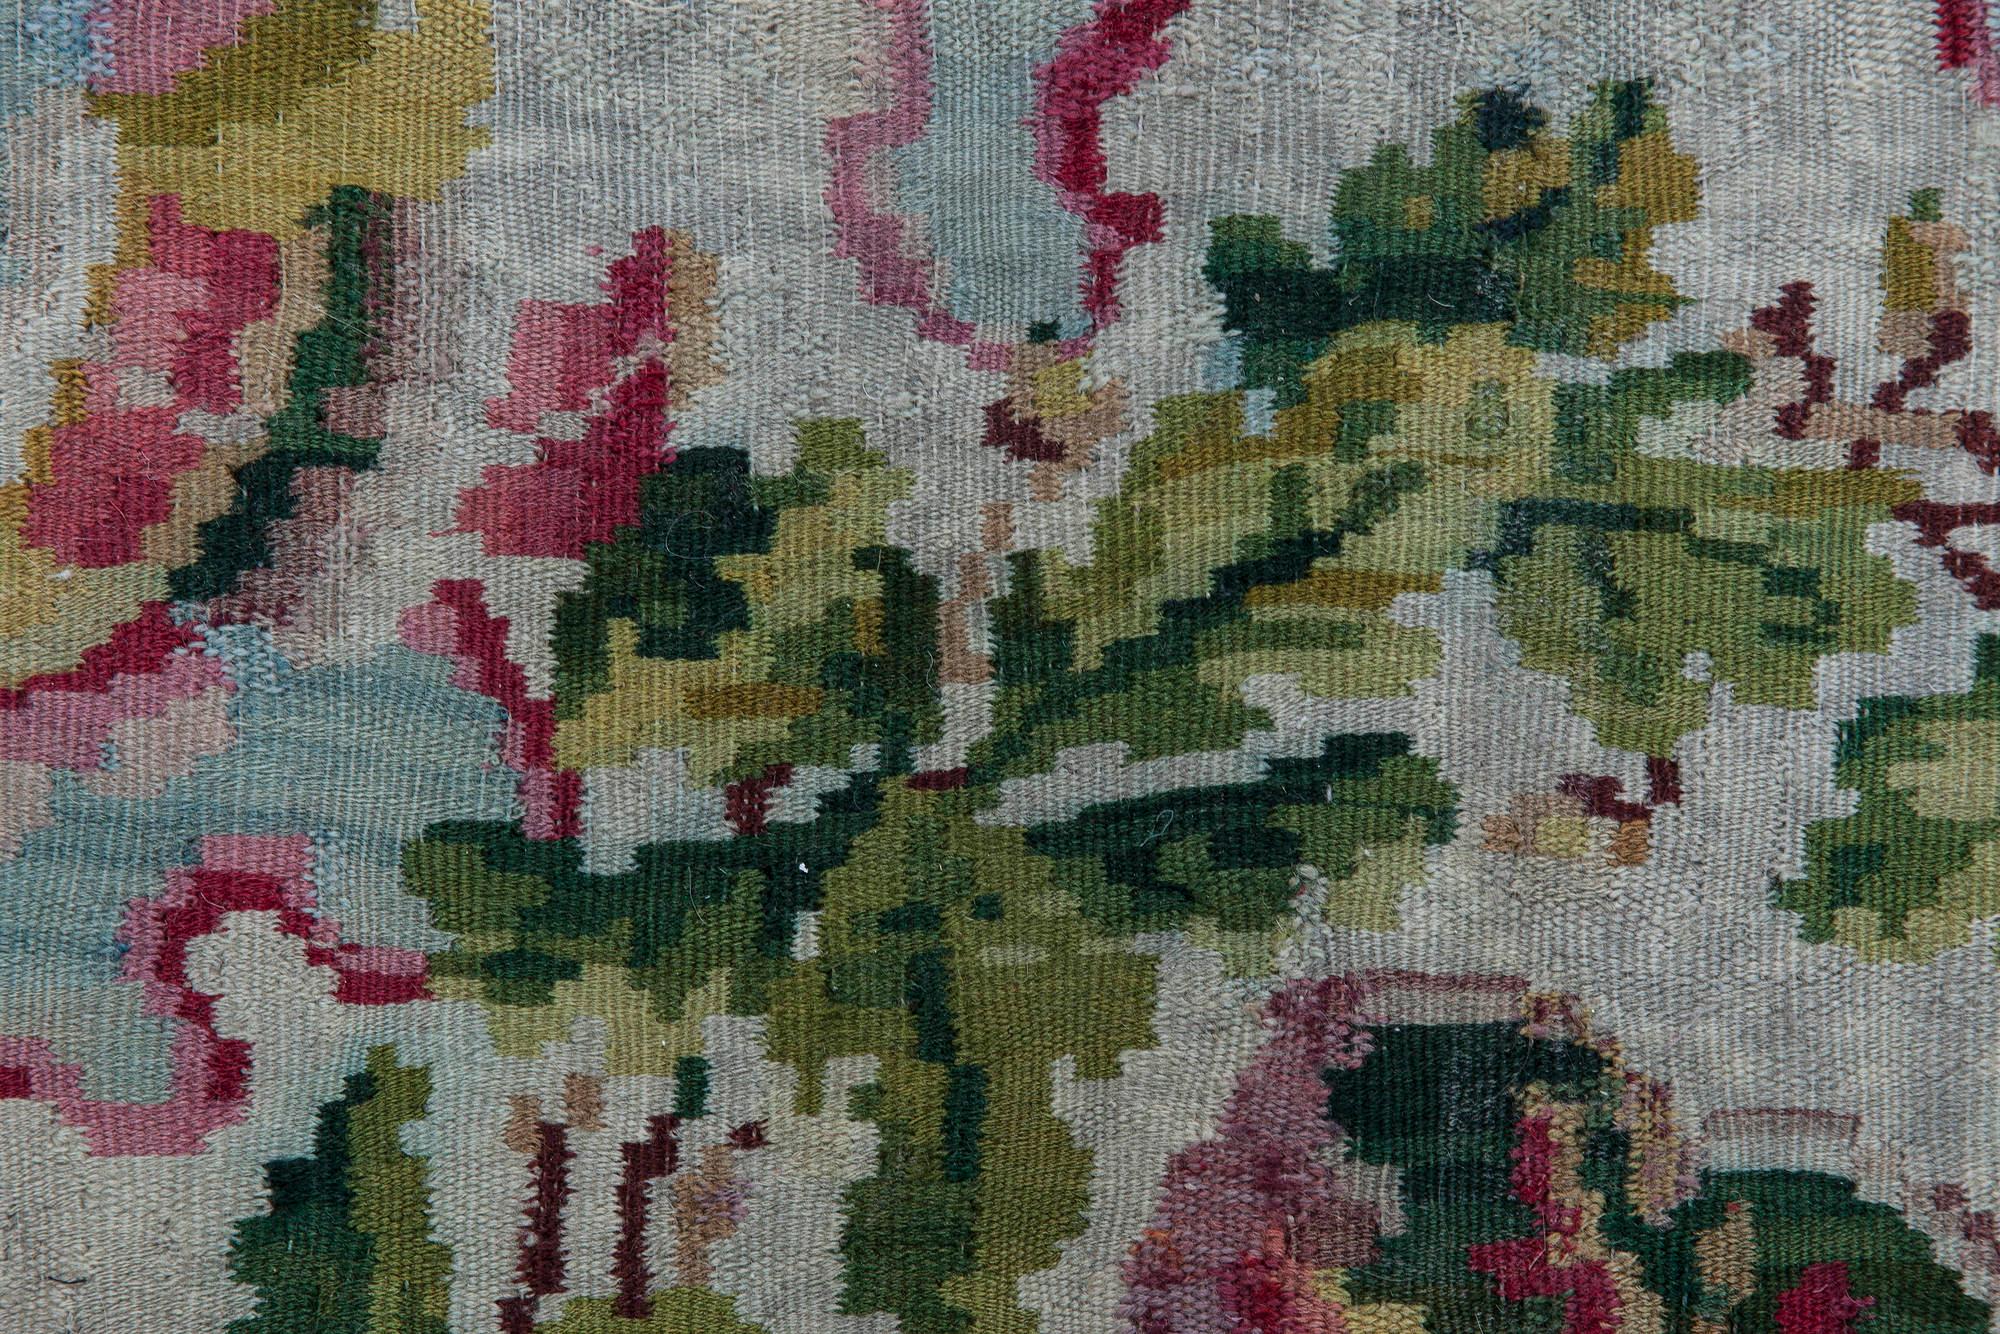 Bessarabischer Wollteppich mit floralem Muster aus dem 19. Jahrhundert.
Größe: 6'0